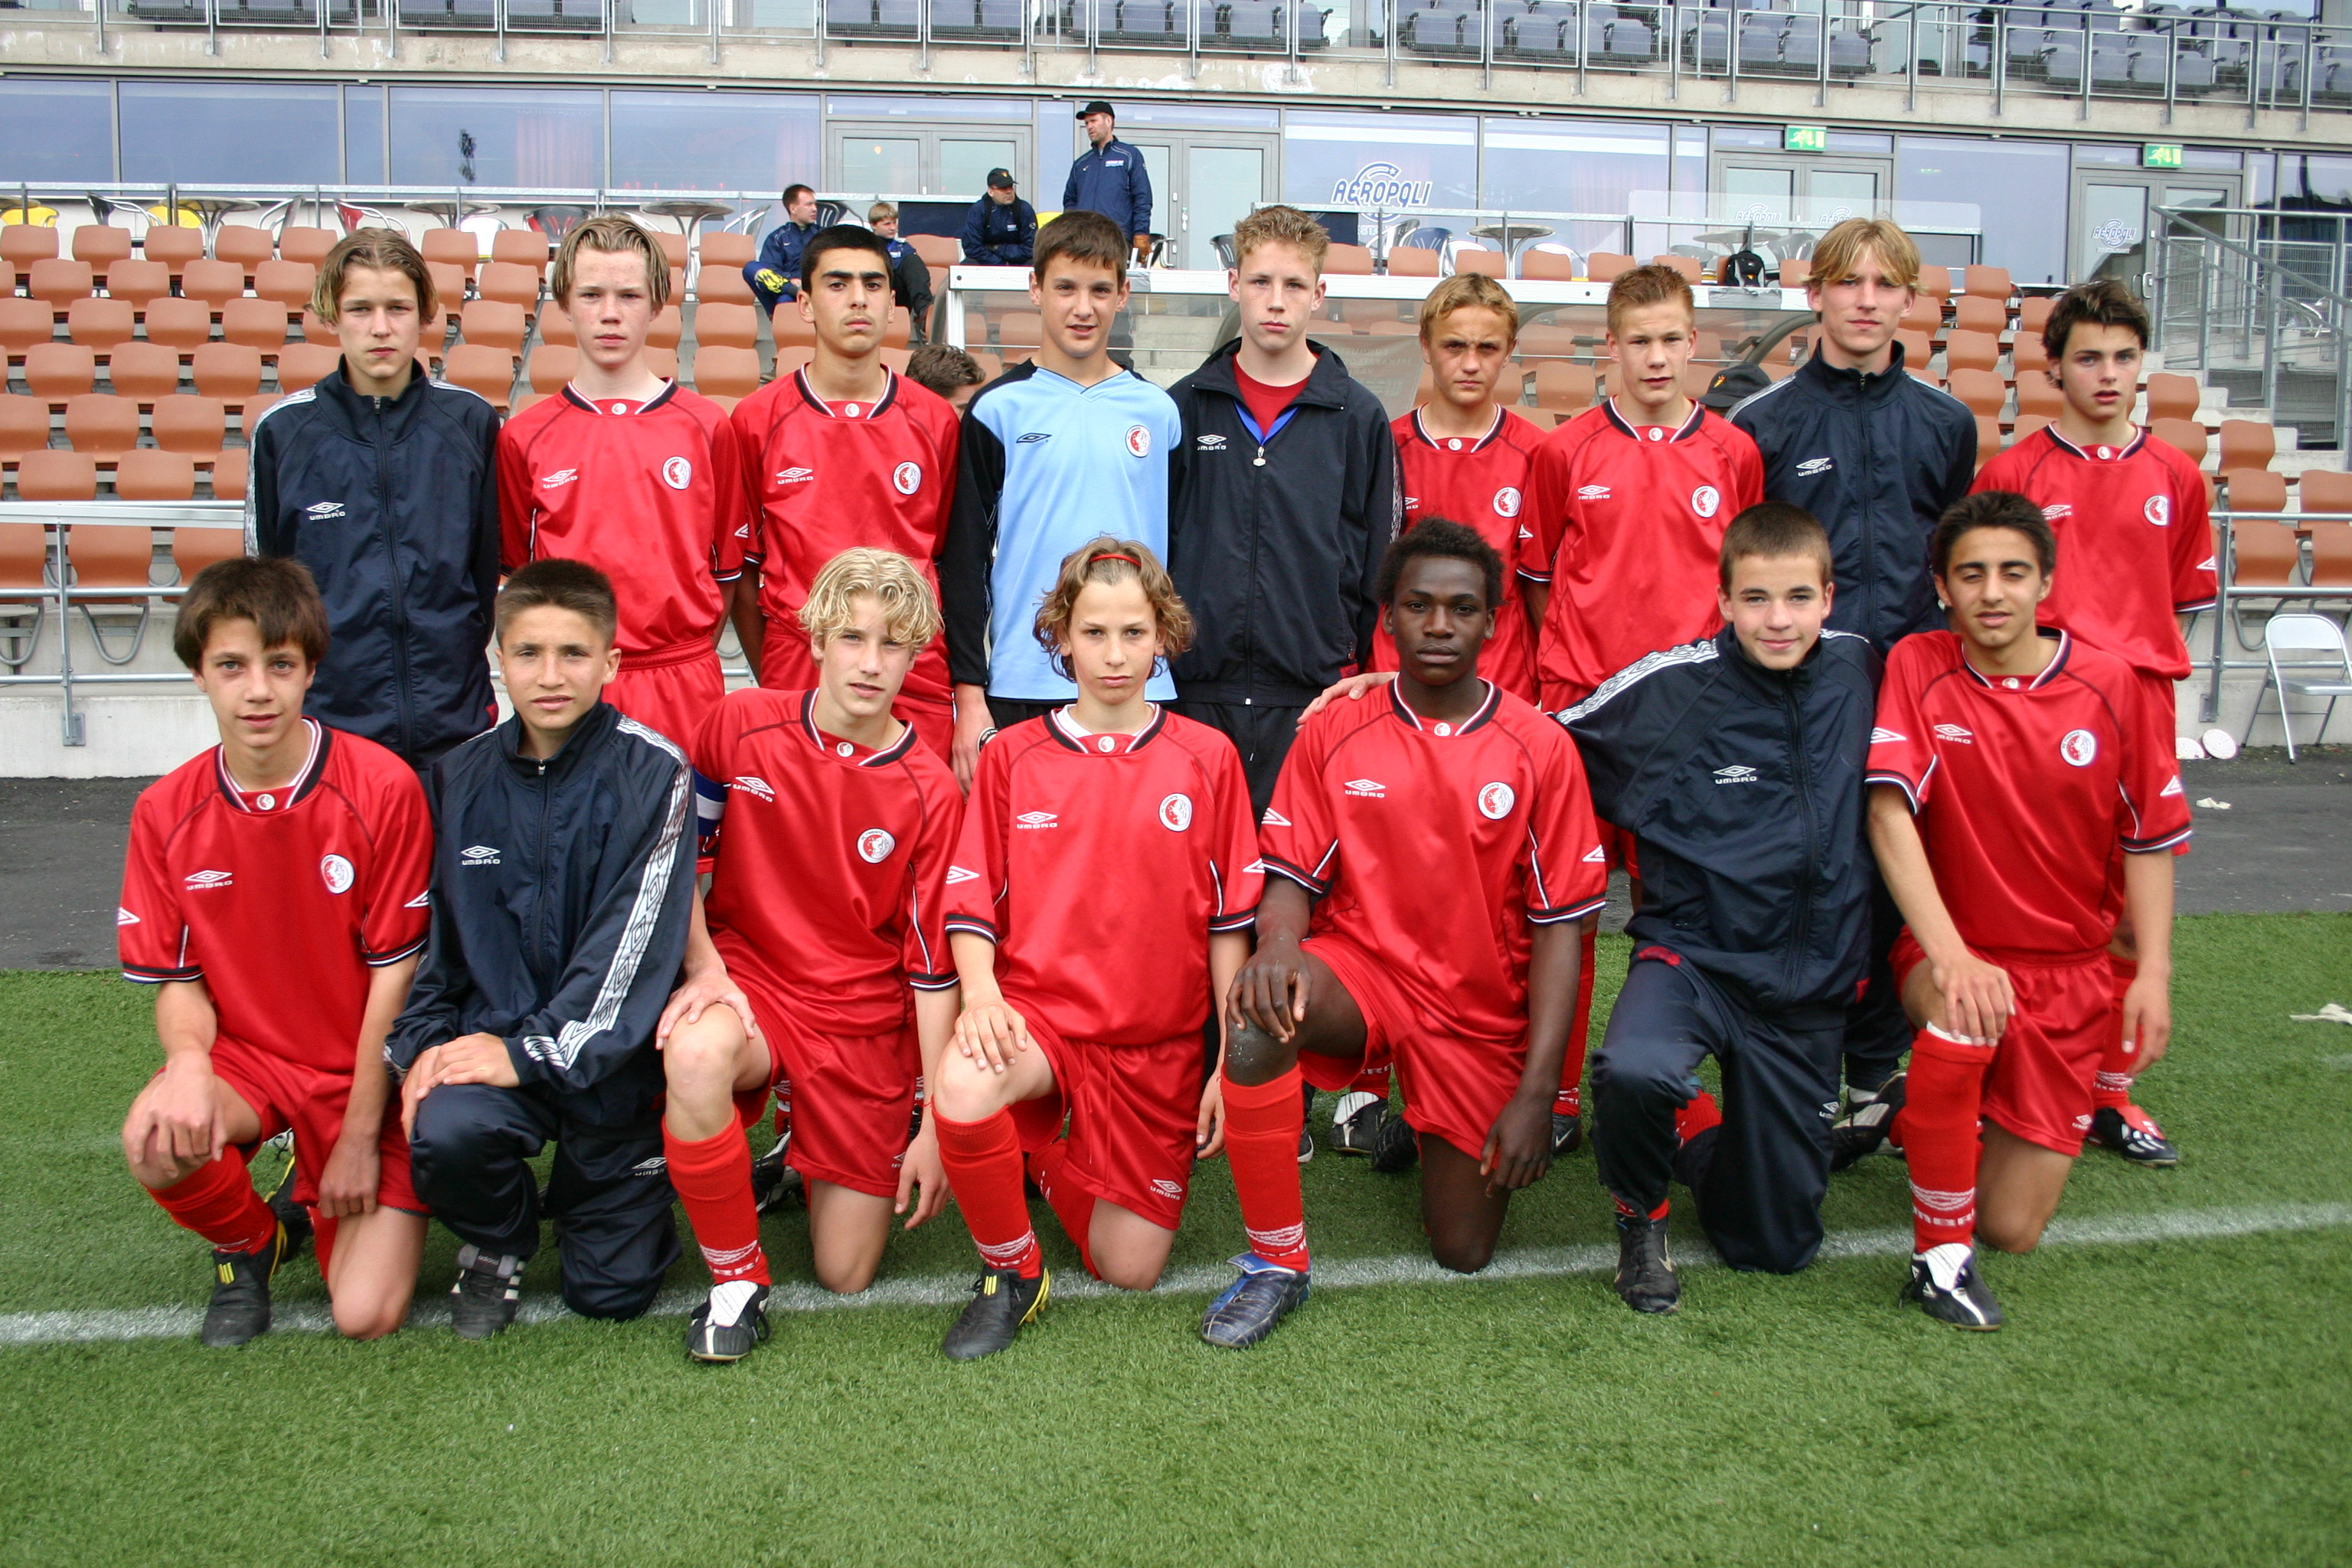 Hình nền FC Twente Enschede (12) - hình nền bóng đá - hình nền cầu thủ - hình nền đội bóng